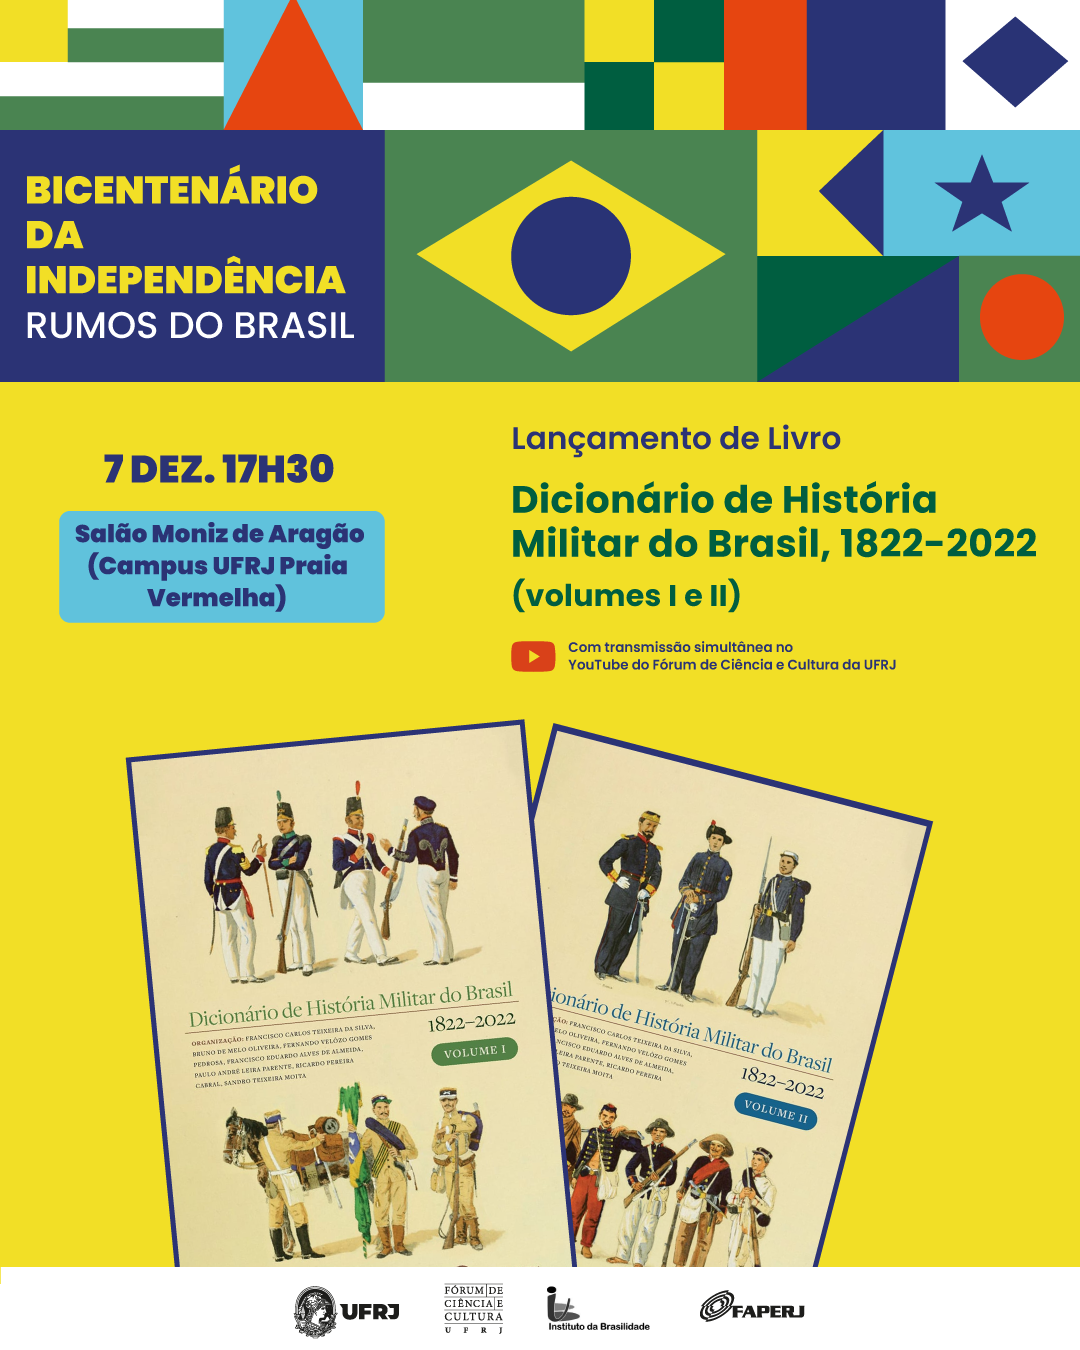 Lançamento da obra “Dicionário de História Militar do Brasil 1822-2022” (volumes I e II)